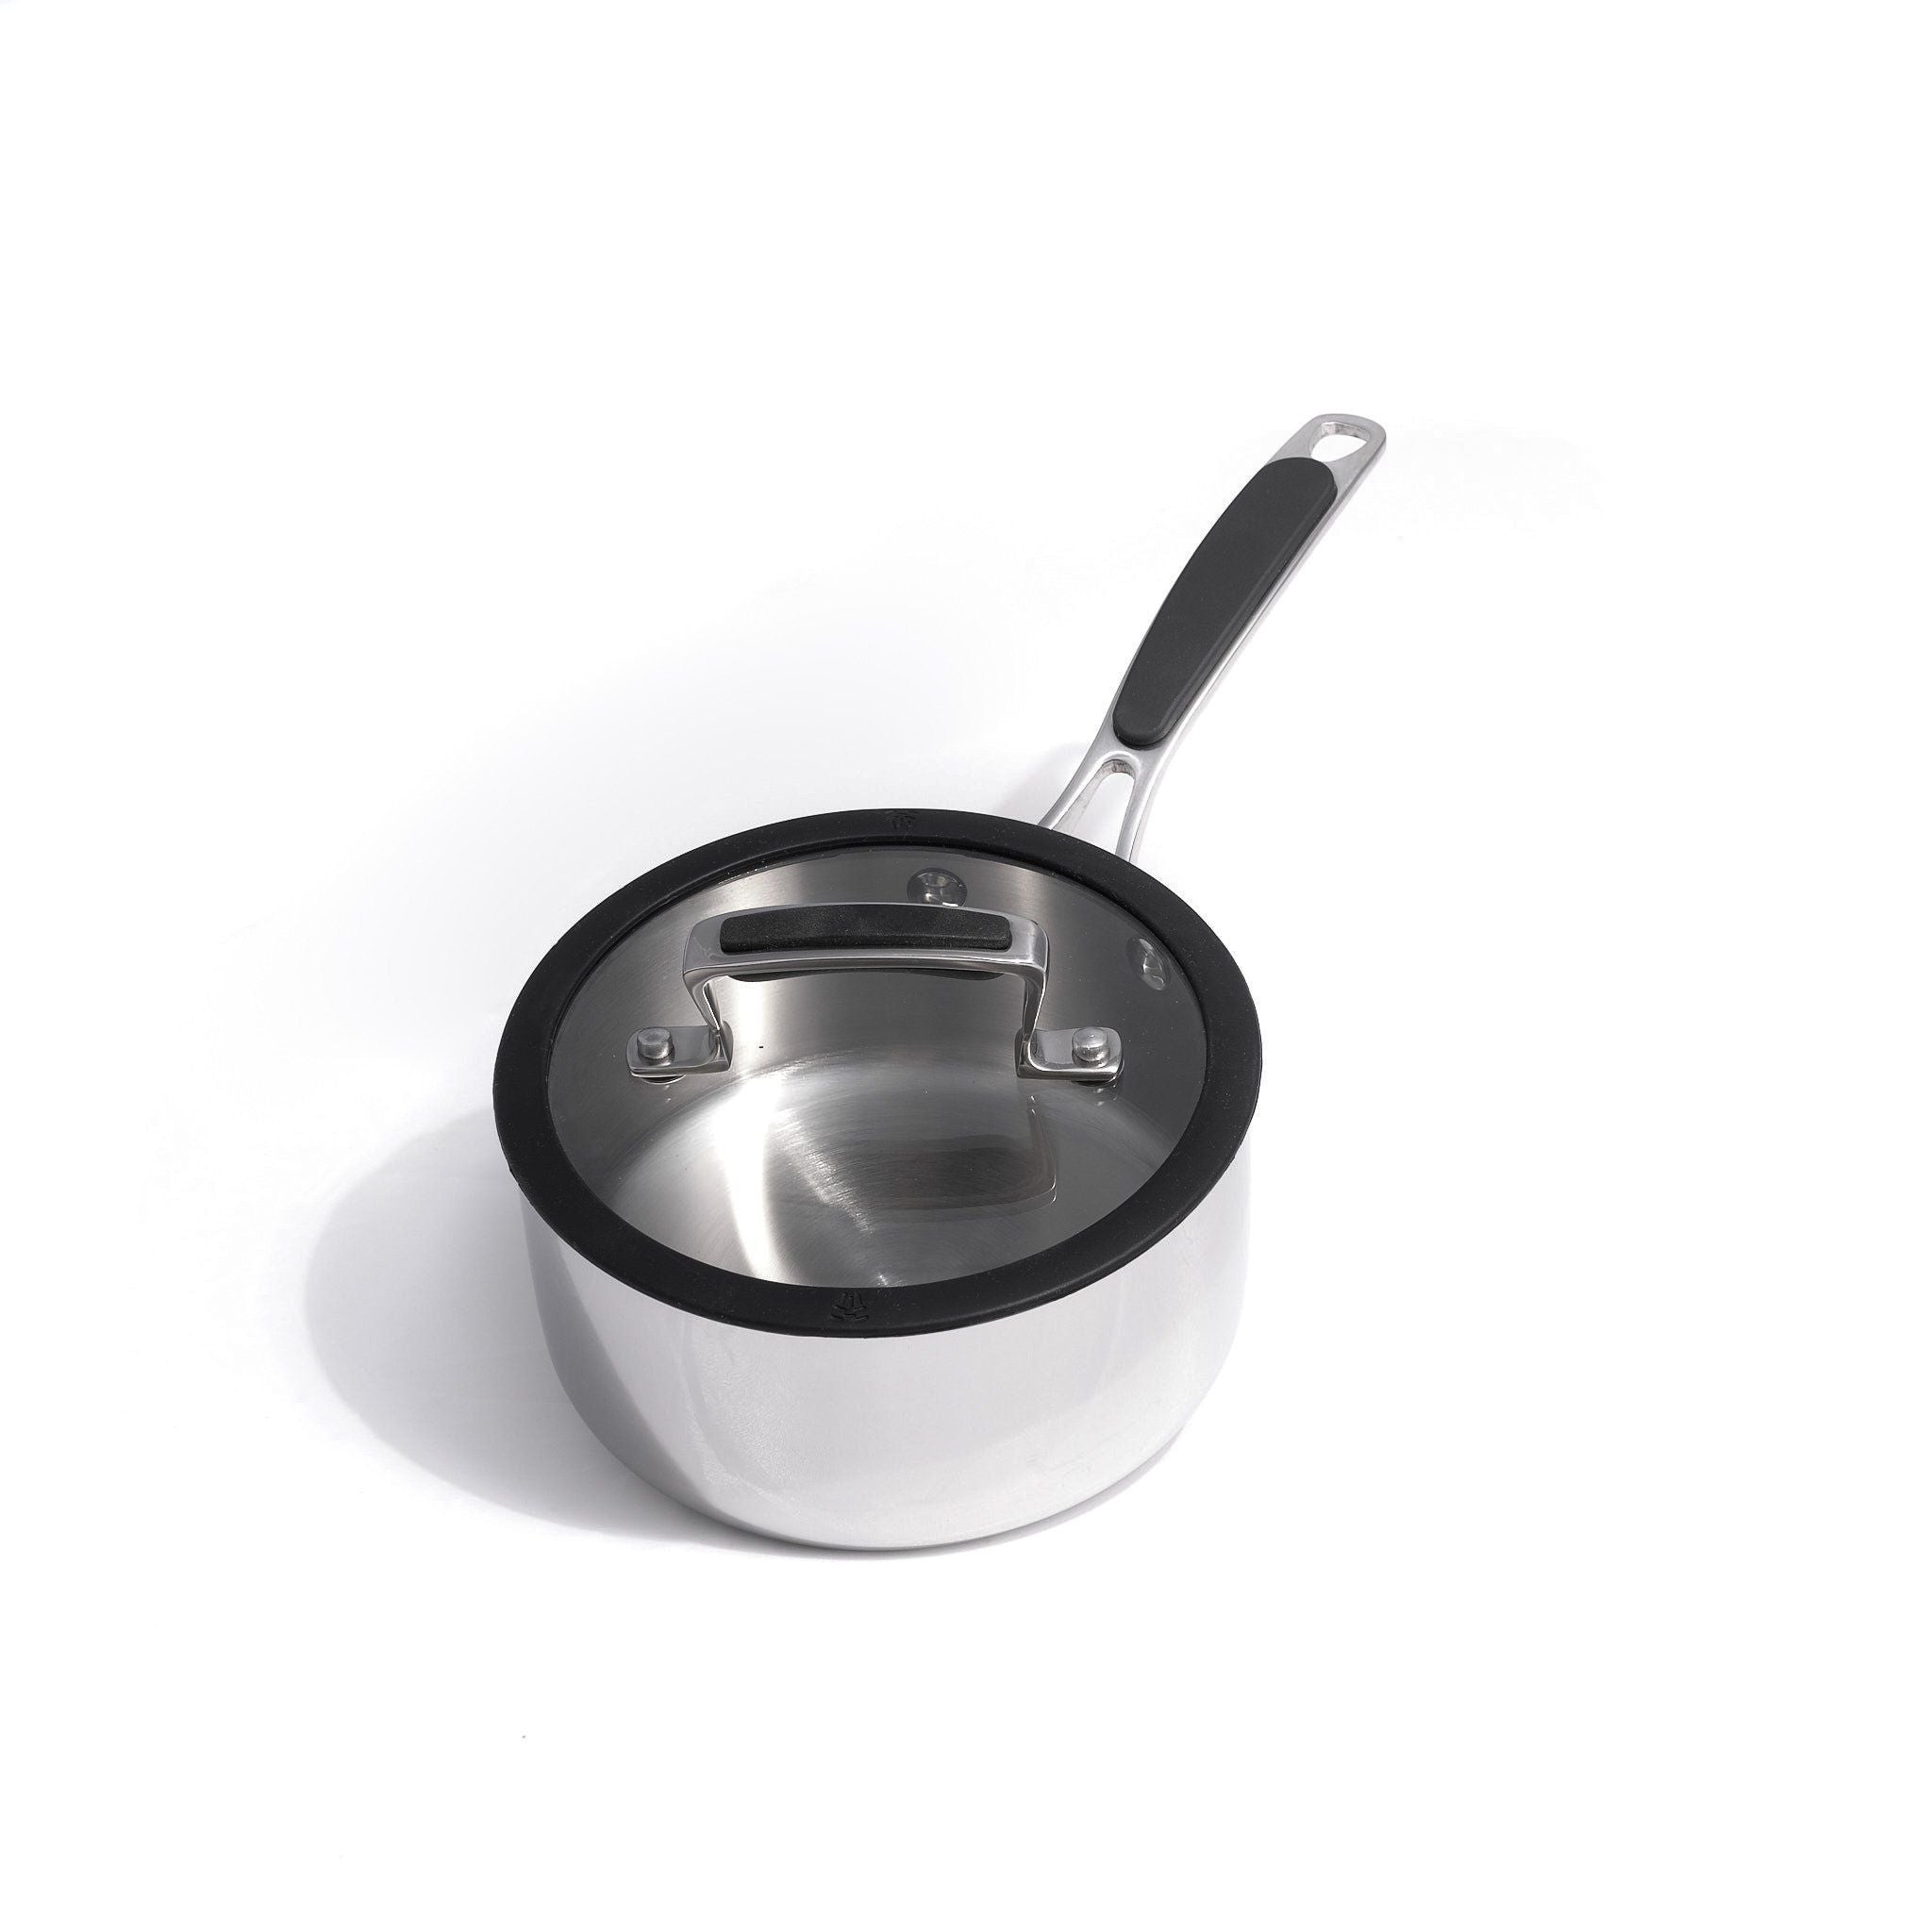 Hot Sale Basics Non-Stick Cookware 8-Piece Set Pots and Pans Black